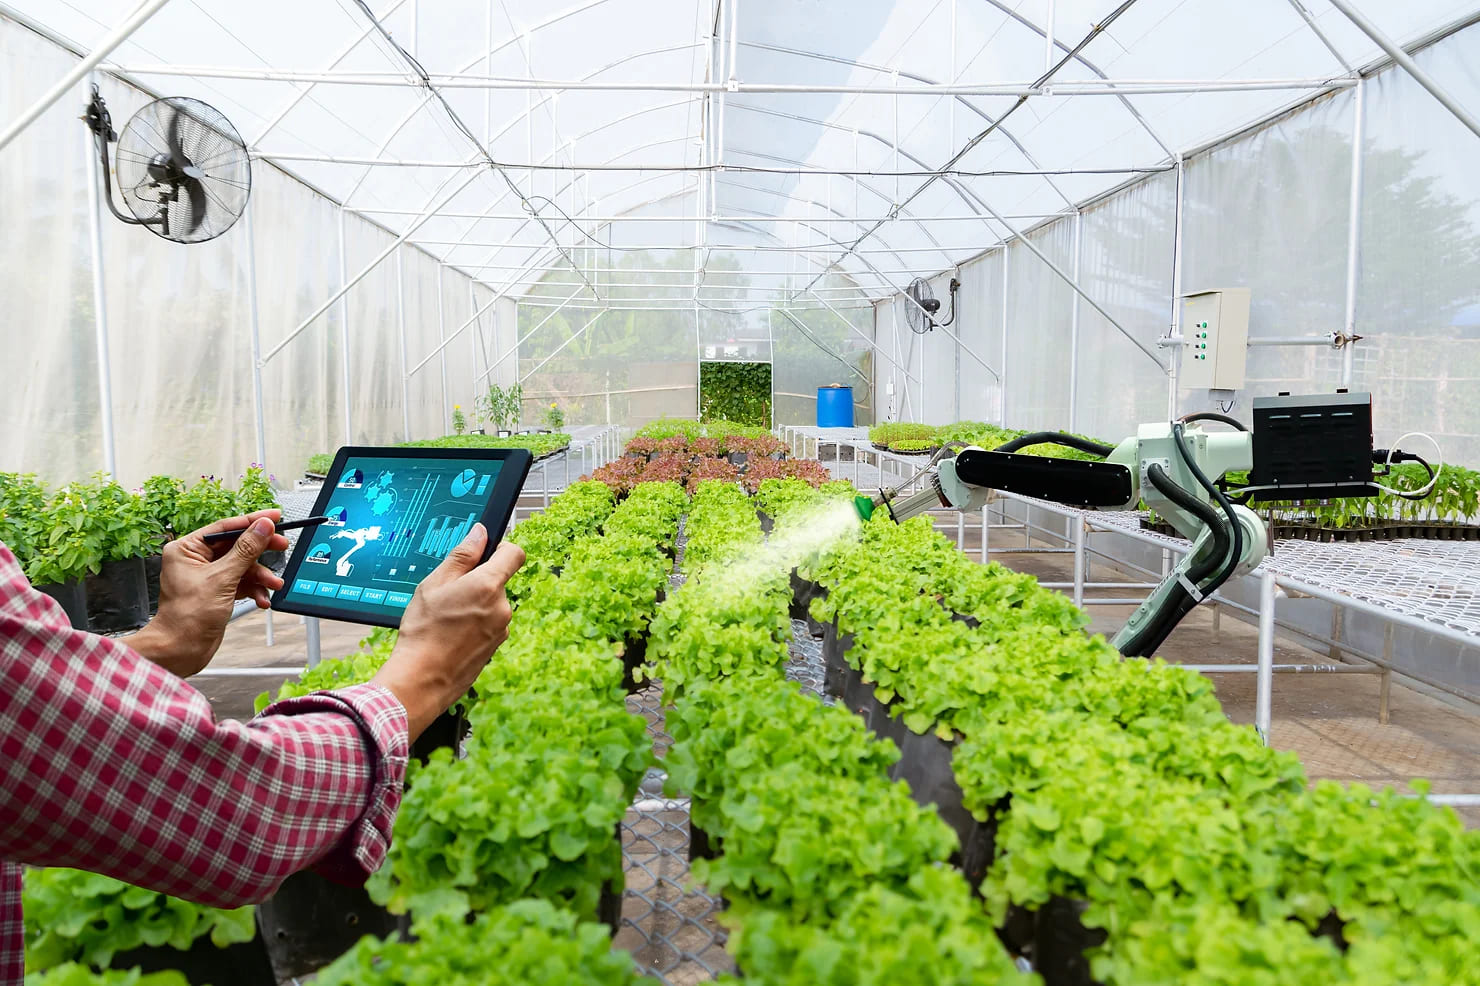 La Transformación Digital Exponencial en el sector agroalimentario ya es un hecho: menor contacto presencial, más formación y acceso a información online, auditorías en remoto